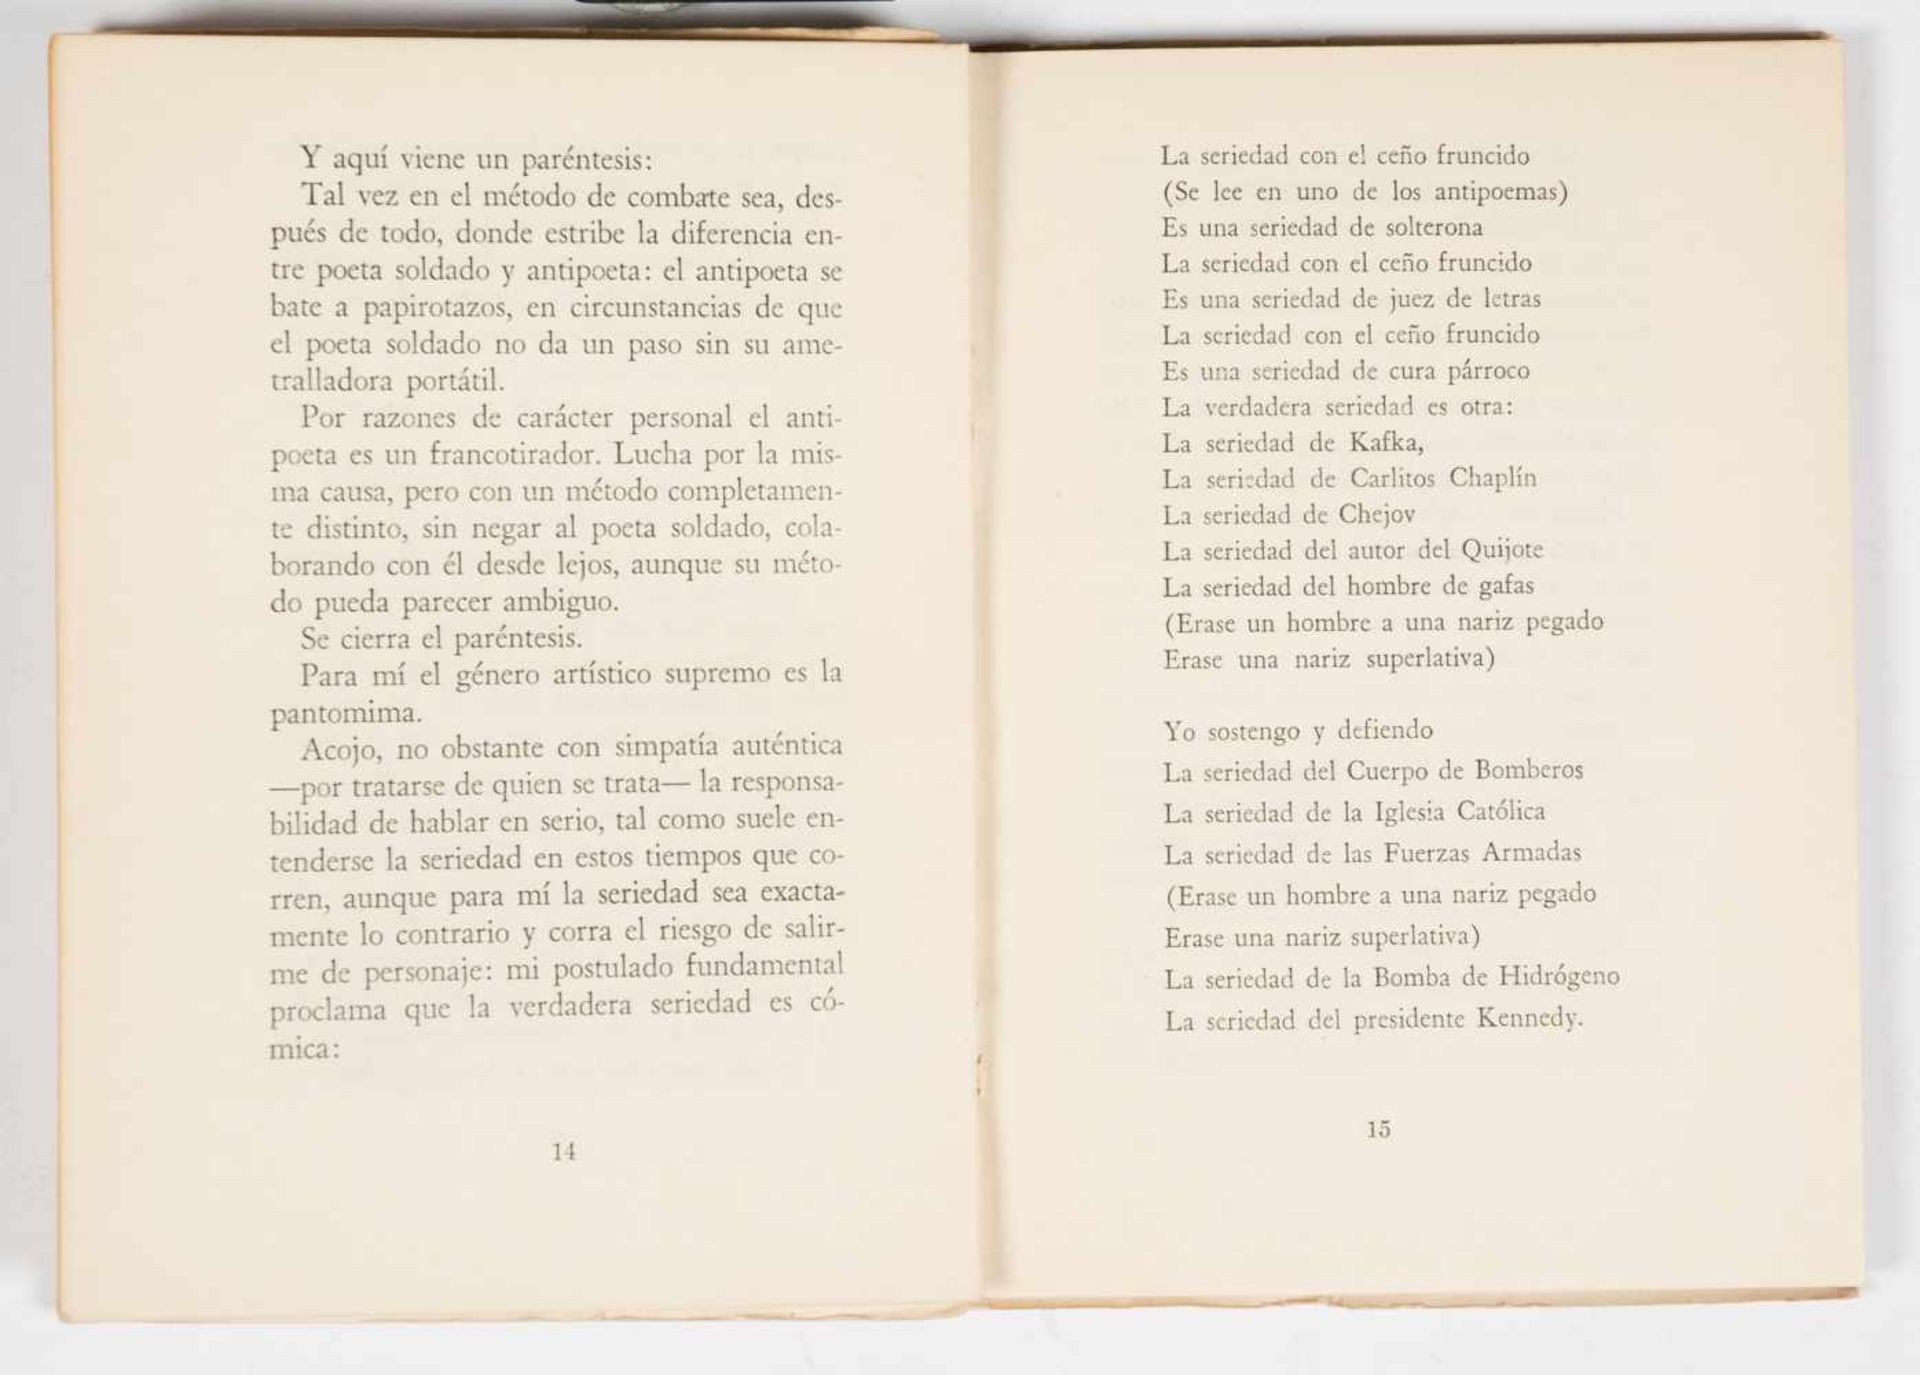 Neruda, Pablo; Parra, Nicanor. "Discursos" (Speeches). 1st edition. Santiago de Chile: Published - Bild 4 aus 4